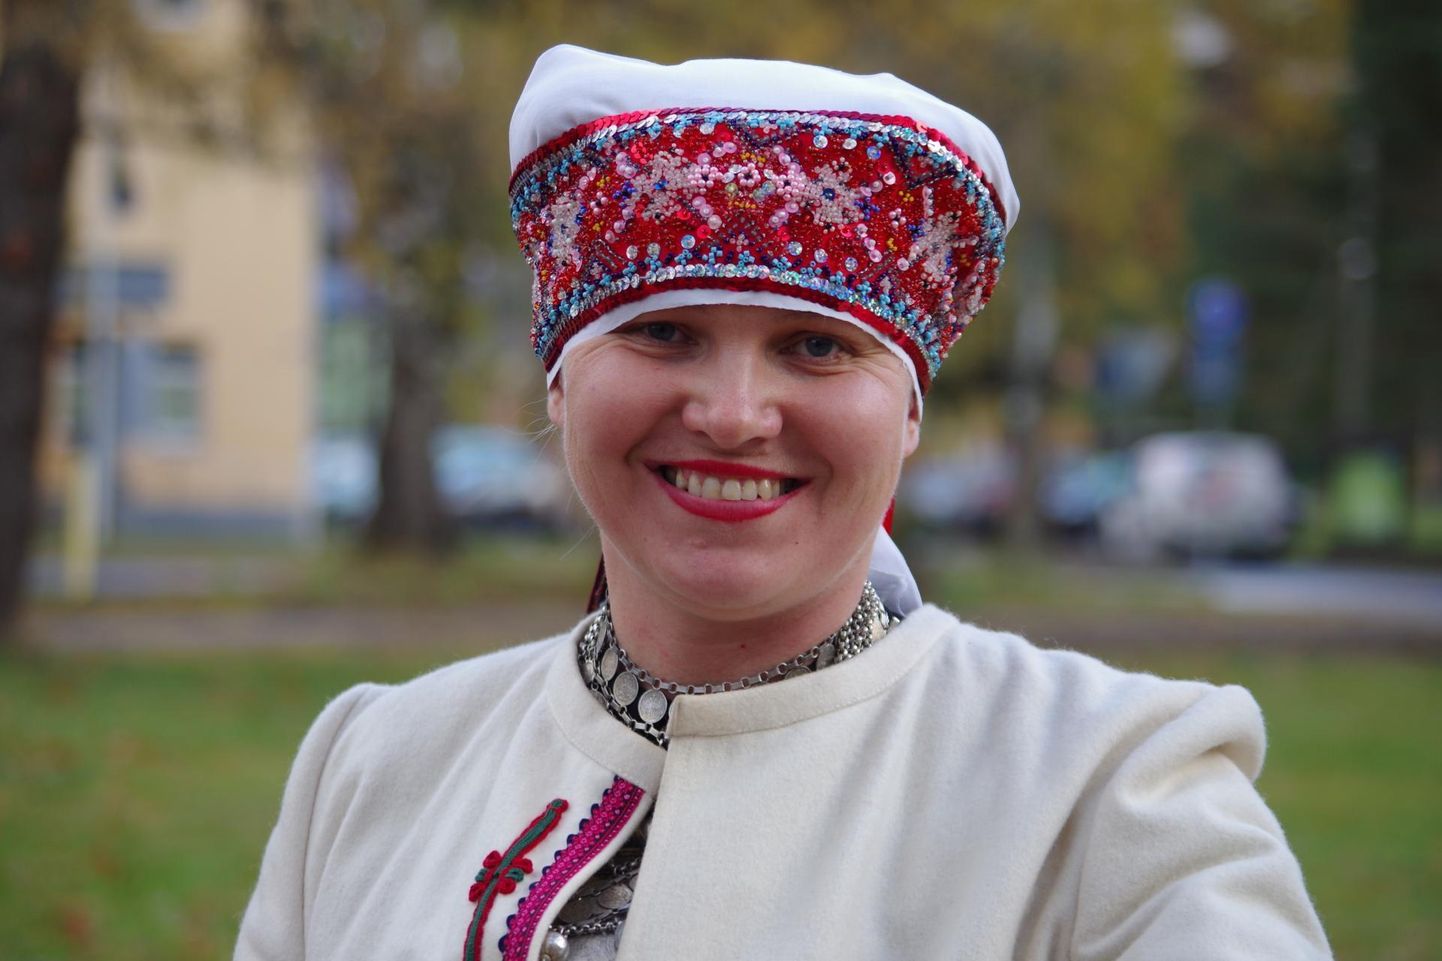 Eesti Folkloorinõukogu teabejuht Annela Laaneots ütles, et Mooste folgikoda on eelpeoks tore koht, sest eelmisel festivalil korraldati seal Baltica maapäev.